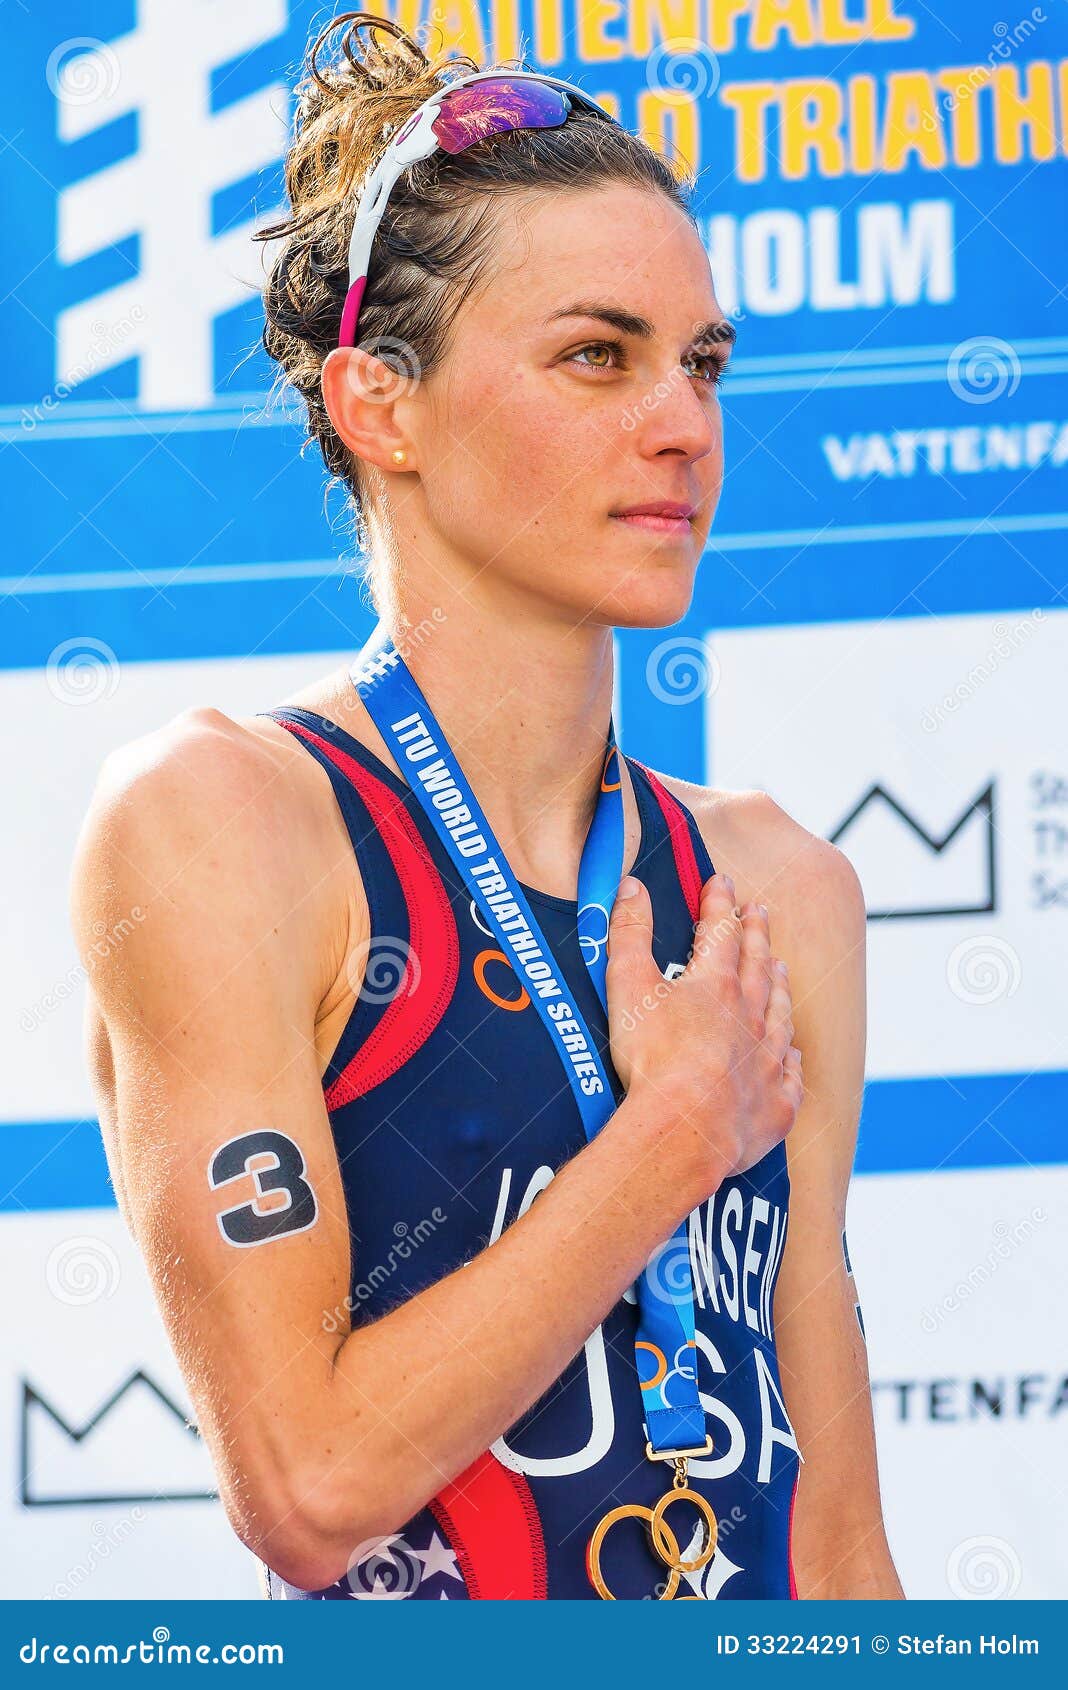 stockholm aug gold medalist gwen jorgensen nat national anthem womens itu world triathlon series event 33224291